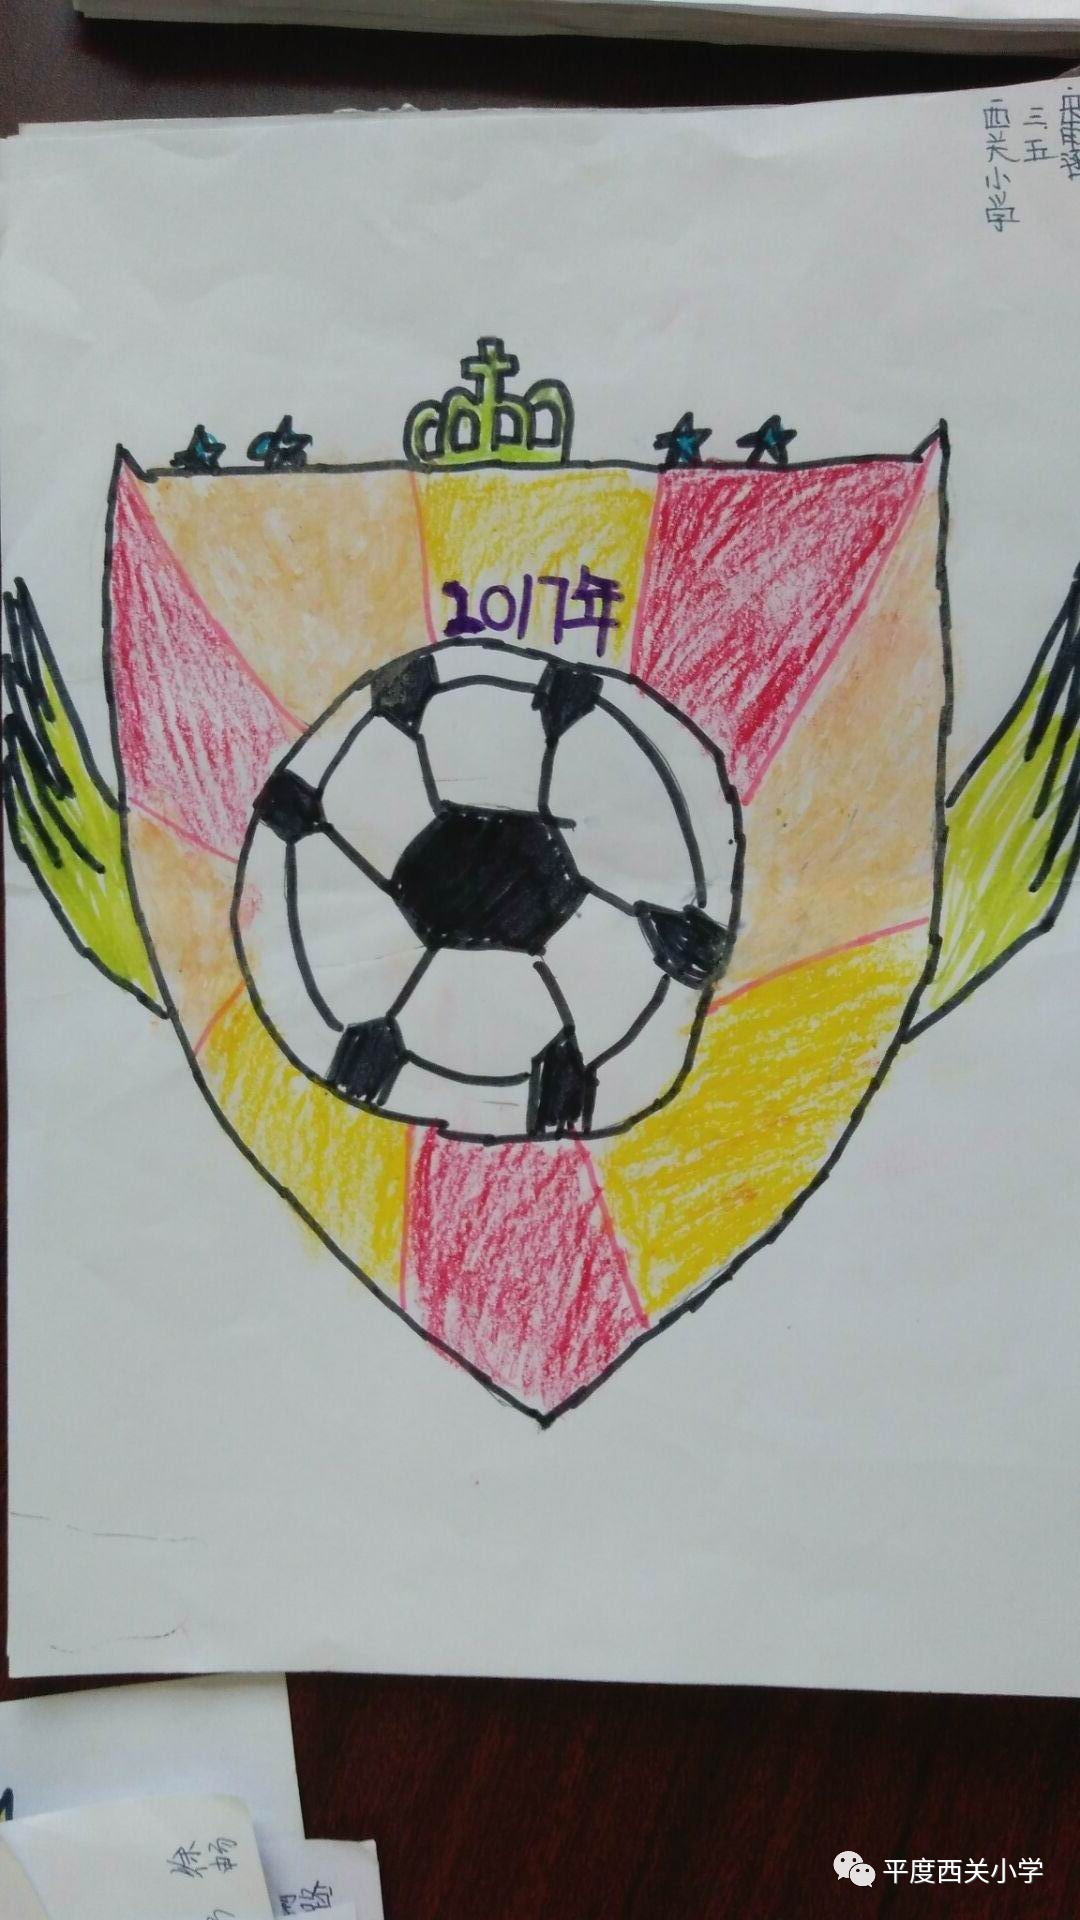 校园足球班级队旗设计——平度市西关小学首届足球文化节活动展示